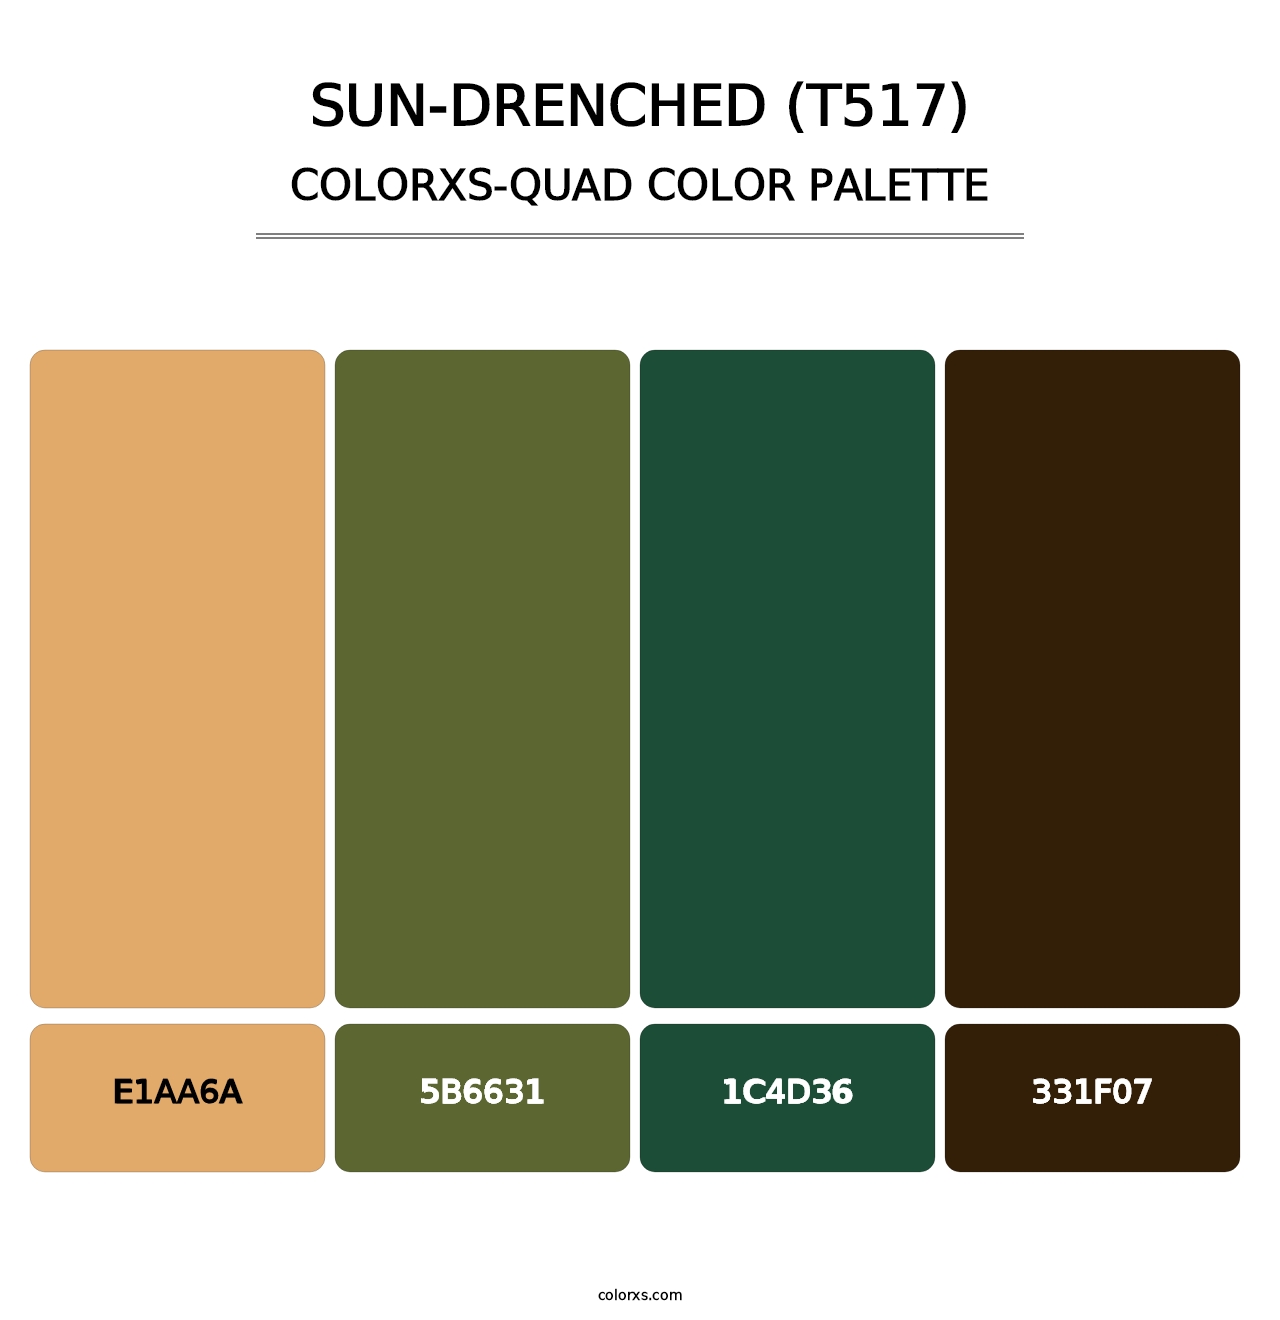 Sun-Drenched (T517) - Colorxs Quad Palette